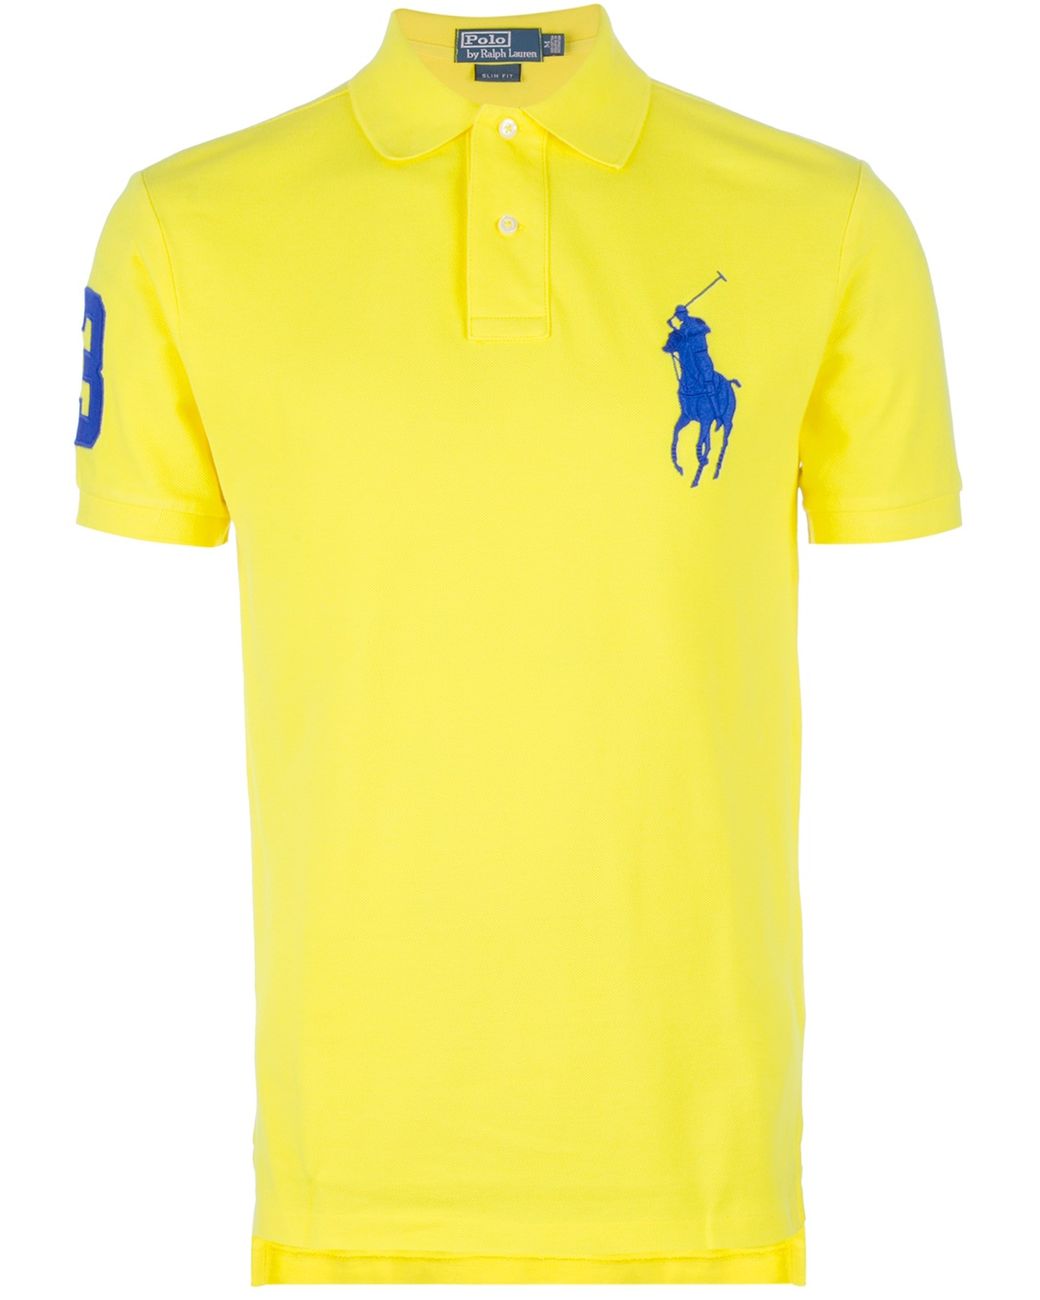 Polo Shirt With Big Horse | lupon.gov.ph